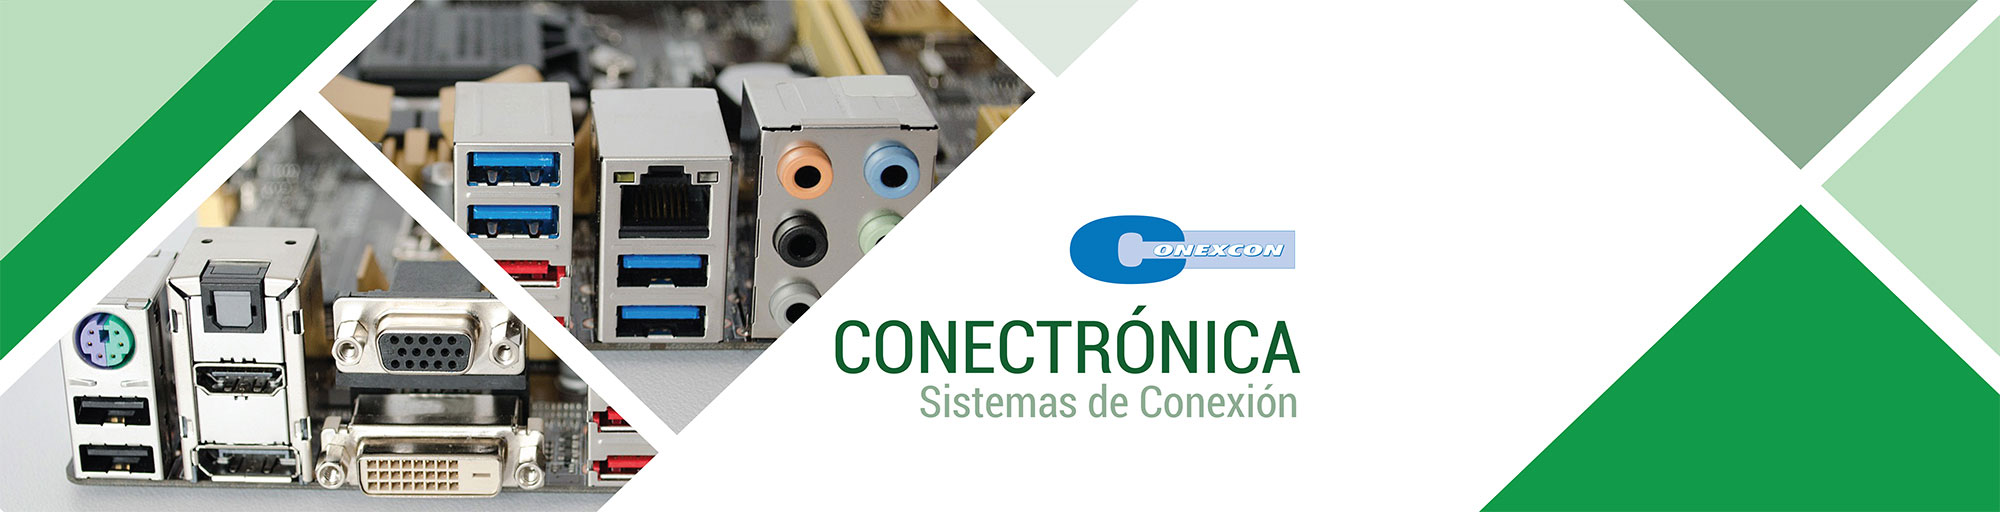 Conectrónica en CENVALSA: conectores eléctricos, cableados, bornas de conexión, etc.